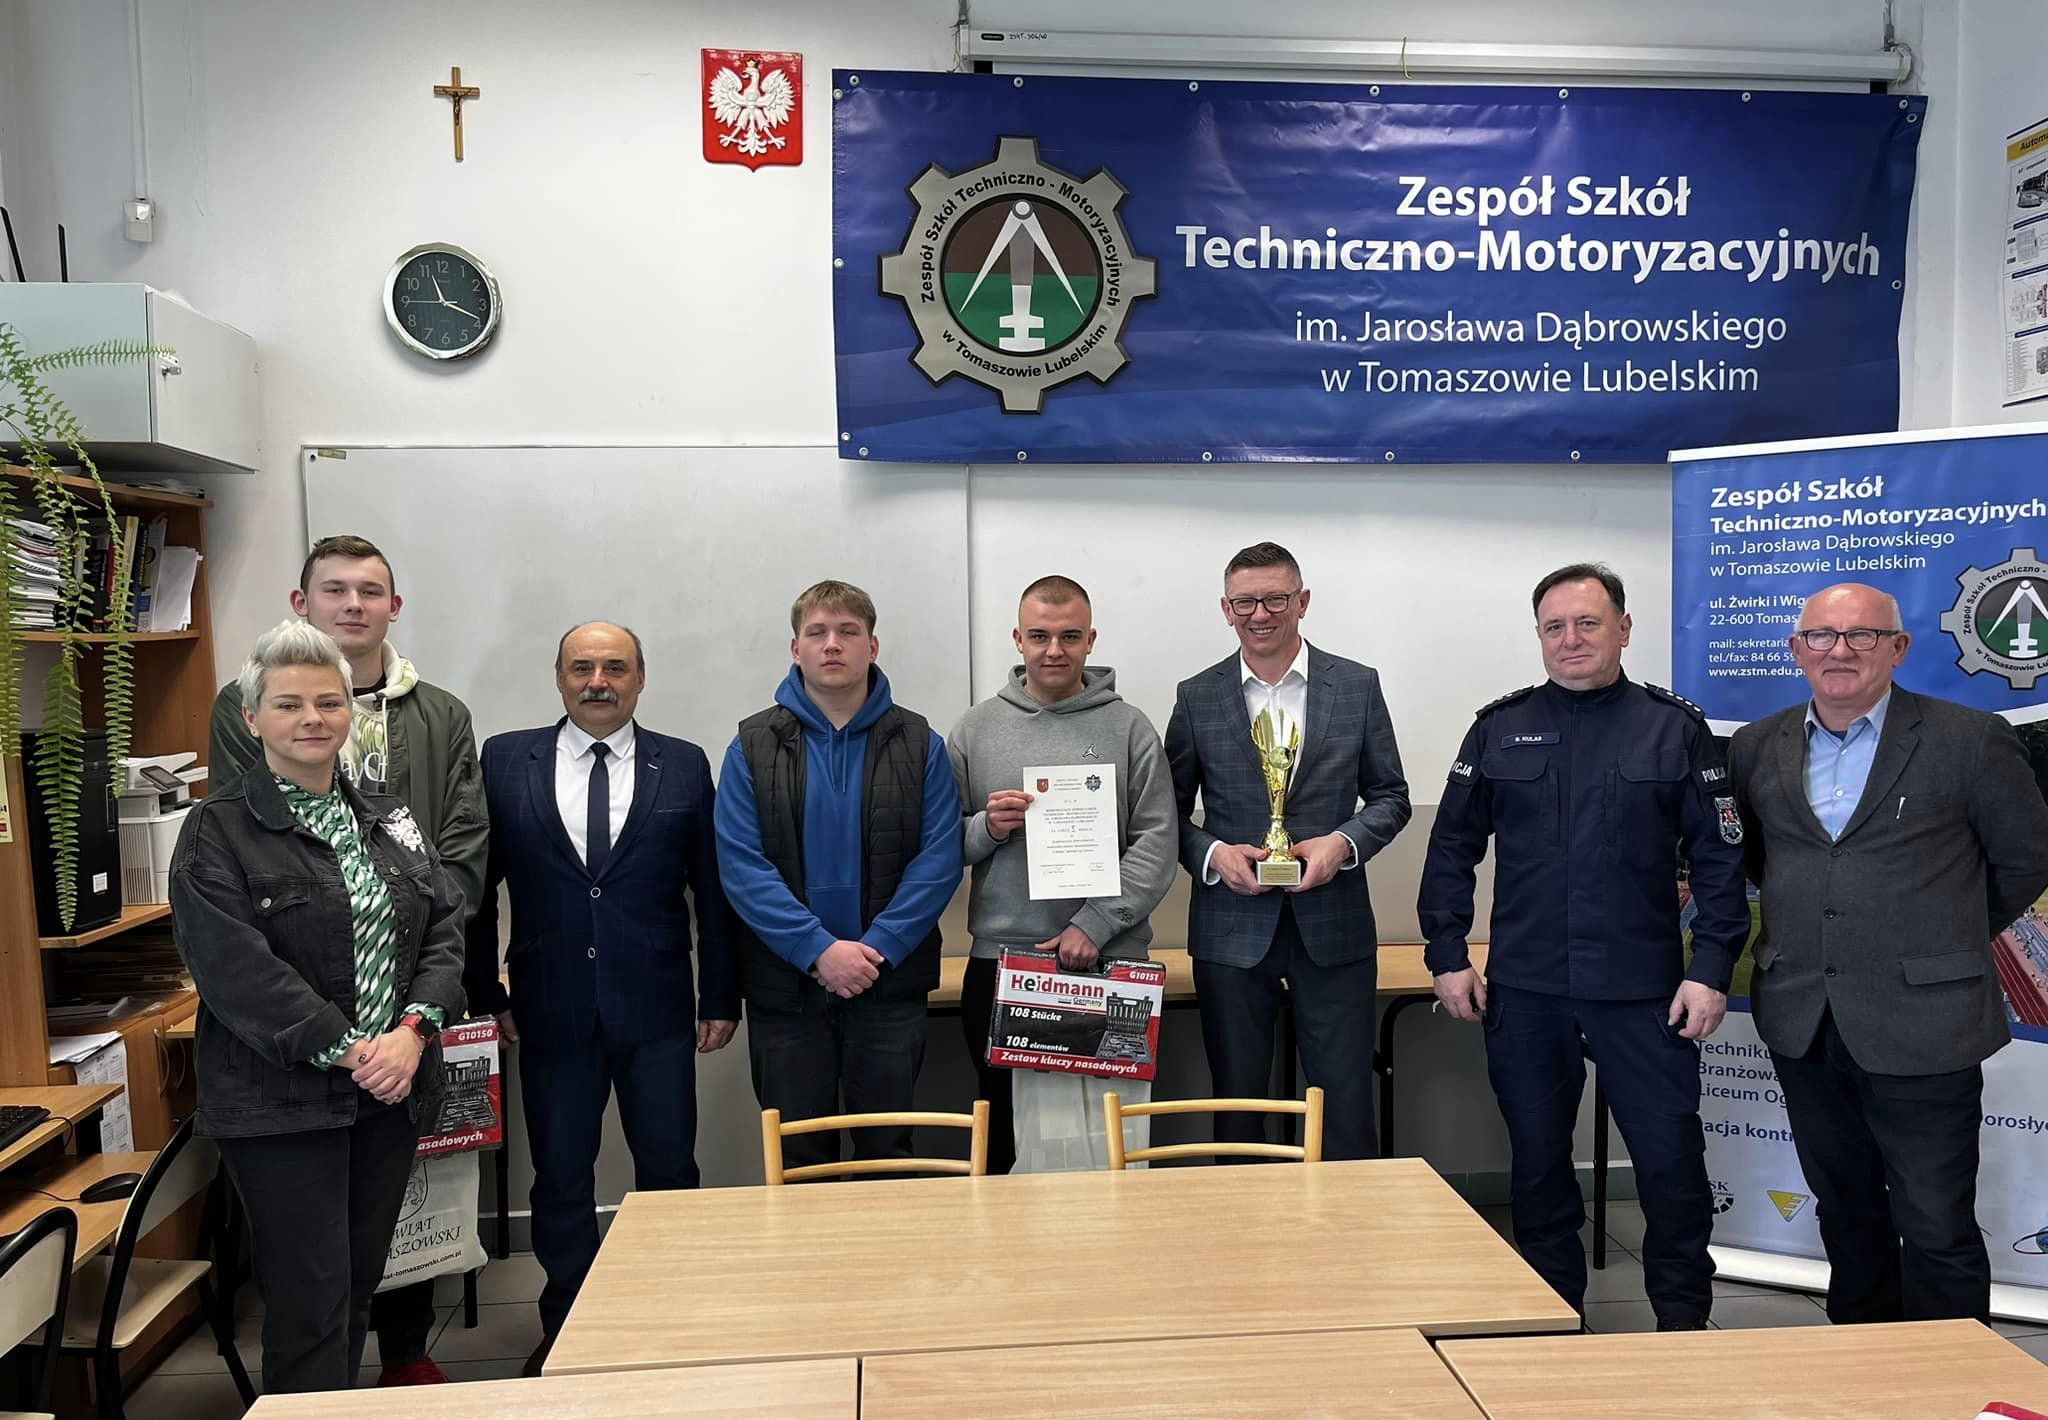 Uczniowie "mechanika" wygrali Powiatowe Eliminacje Ogólnopolskiego Młodzieżowego Turnieju Motoryzacyjnego